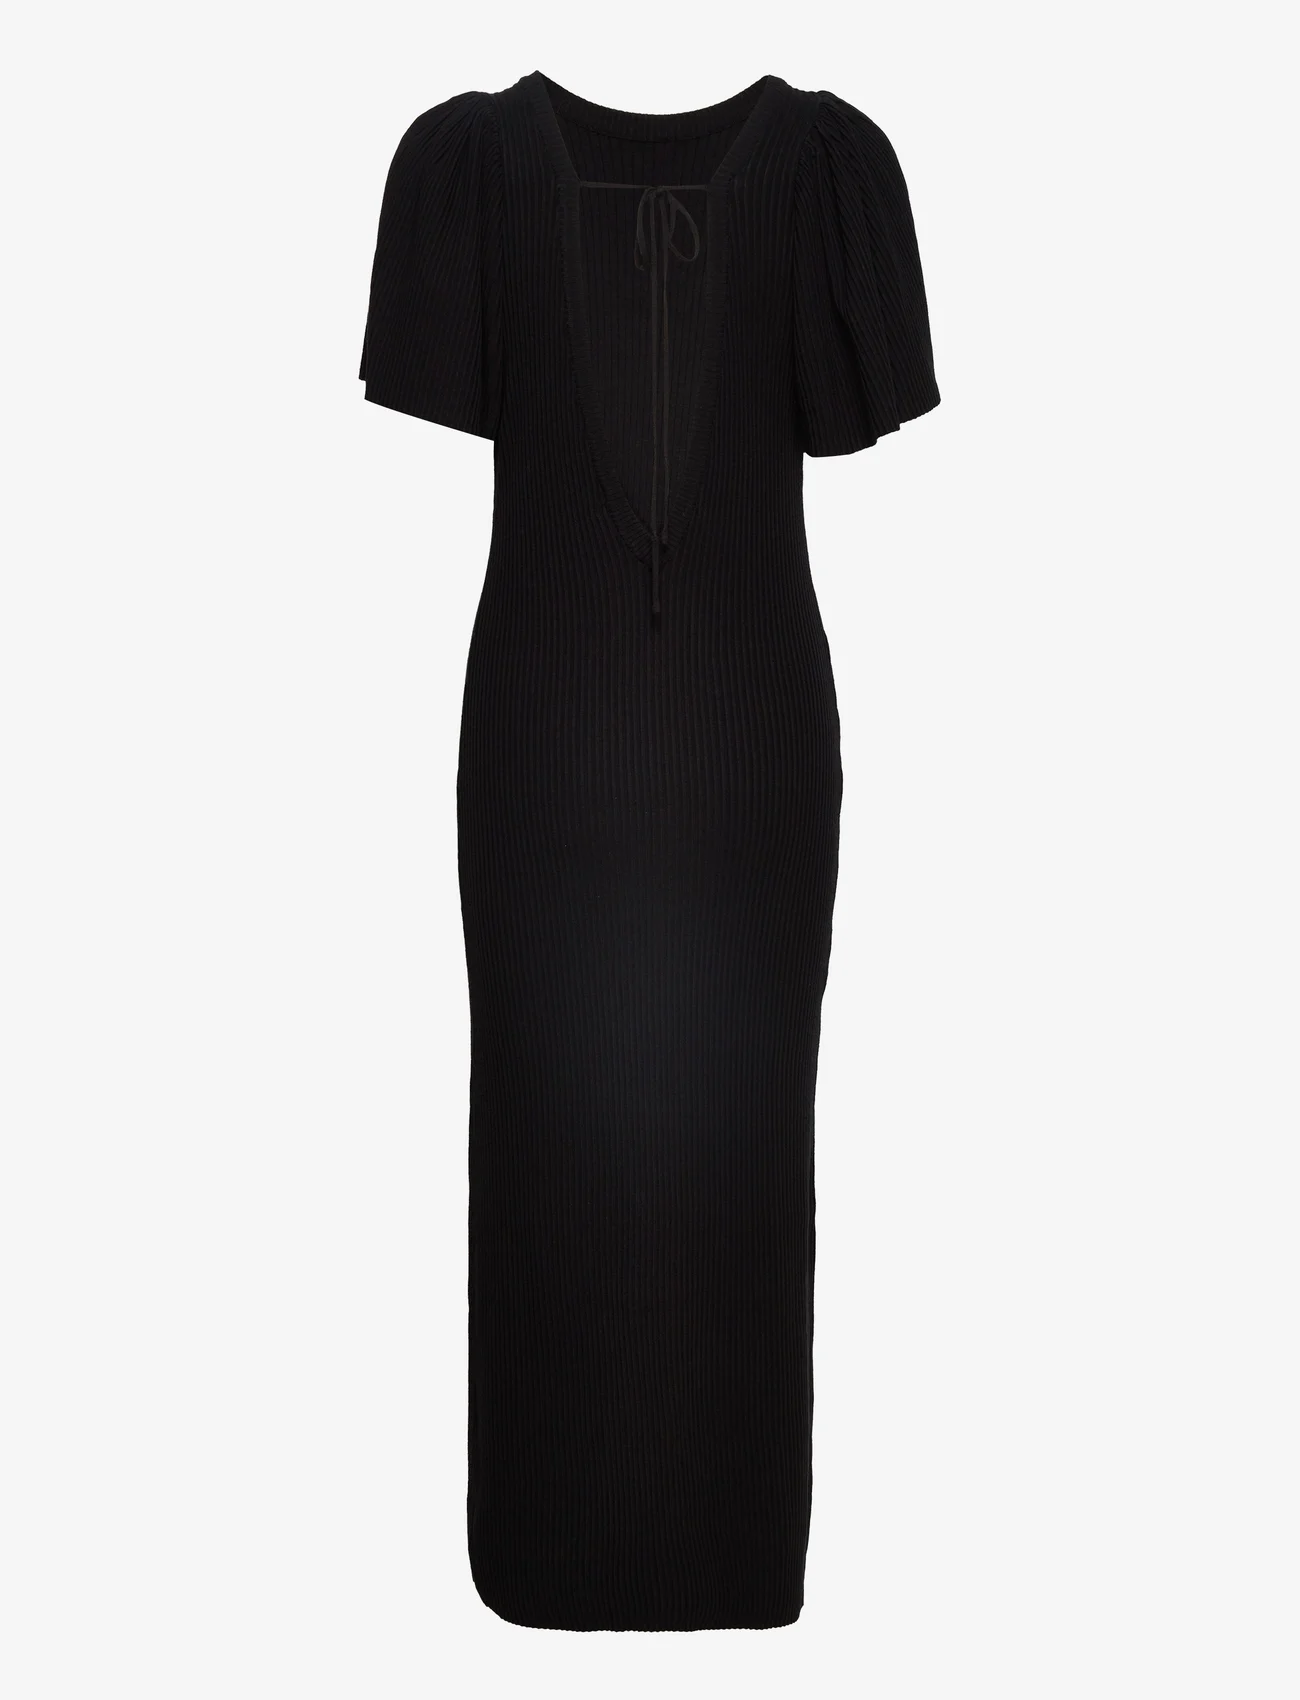 Munthe - VALLEN - stramme kjoler - black - 1